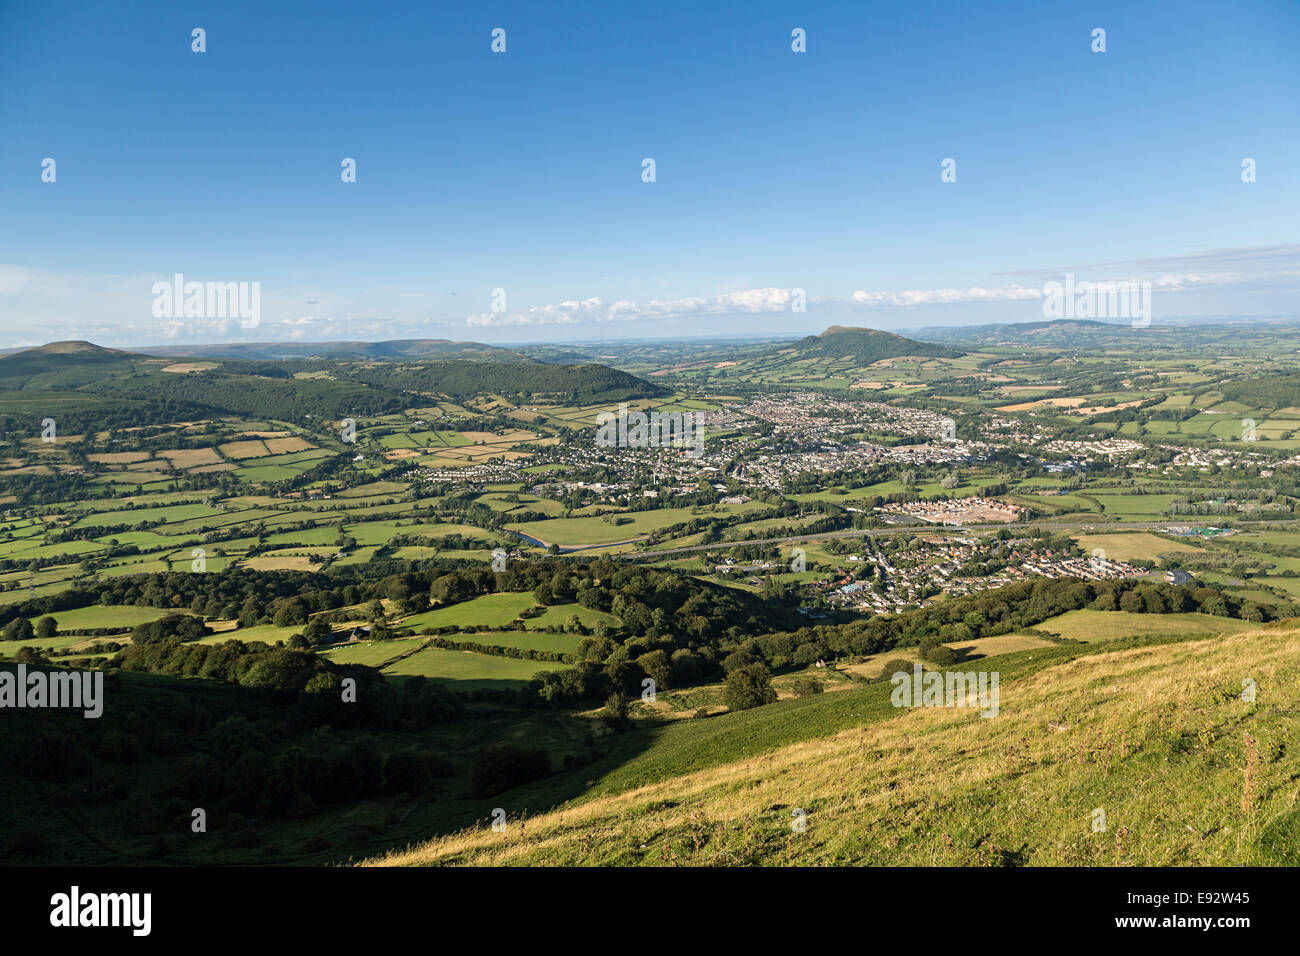 La vue depuis l'Ardanaiseig d'Abergavenny et l'Usk Valley avec le Skirrid au loin, au Pays de Galles, Royaume-Uni Banque D'Images